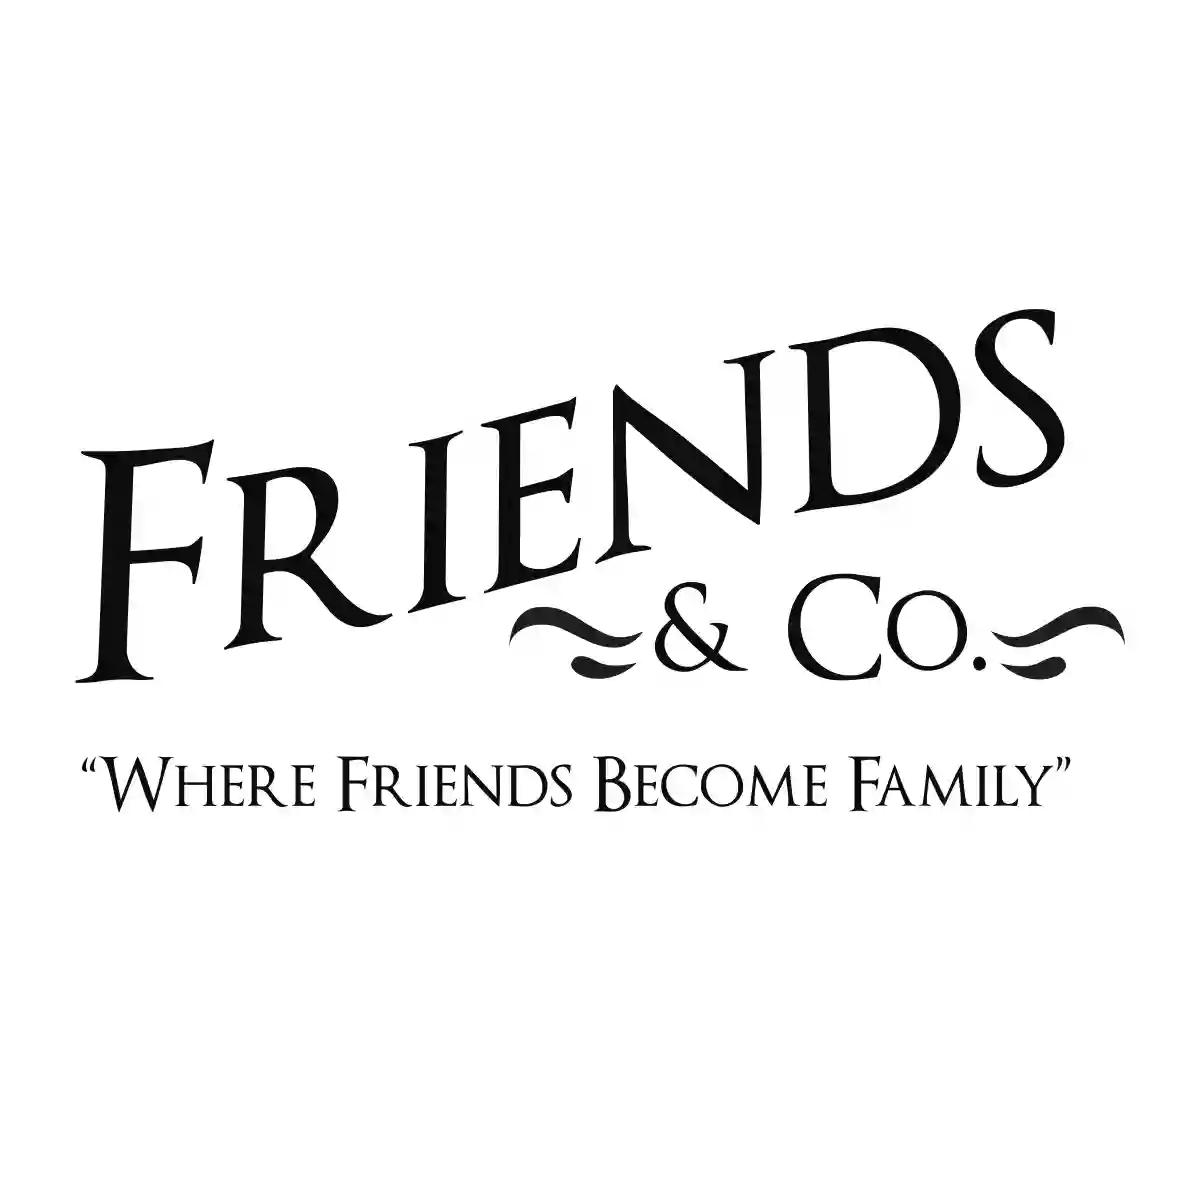 Friends & Co